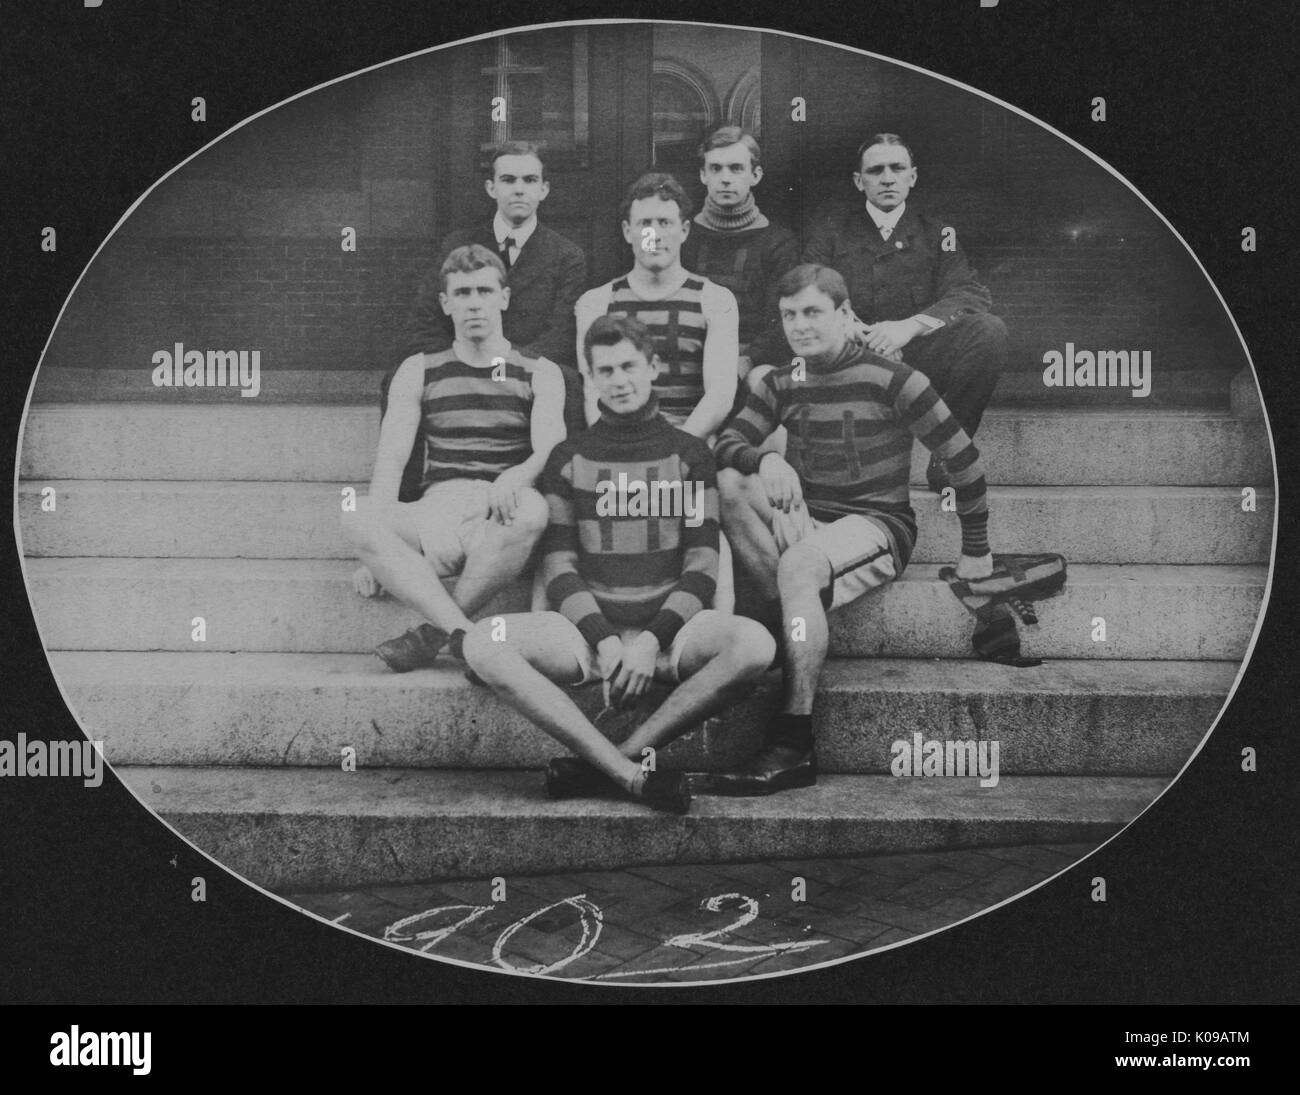 Photo de groupe, les membres de l'équipe de piste sont assis en uniforme dans un portrait officiel sur les étapes, 1902. Banque D'Images